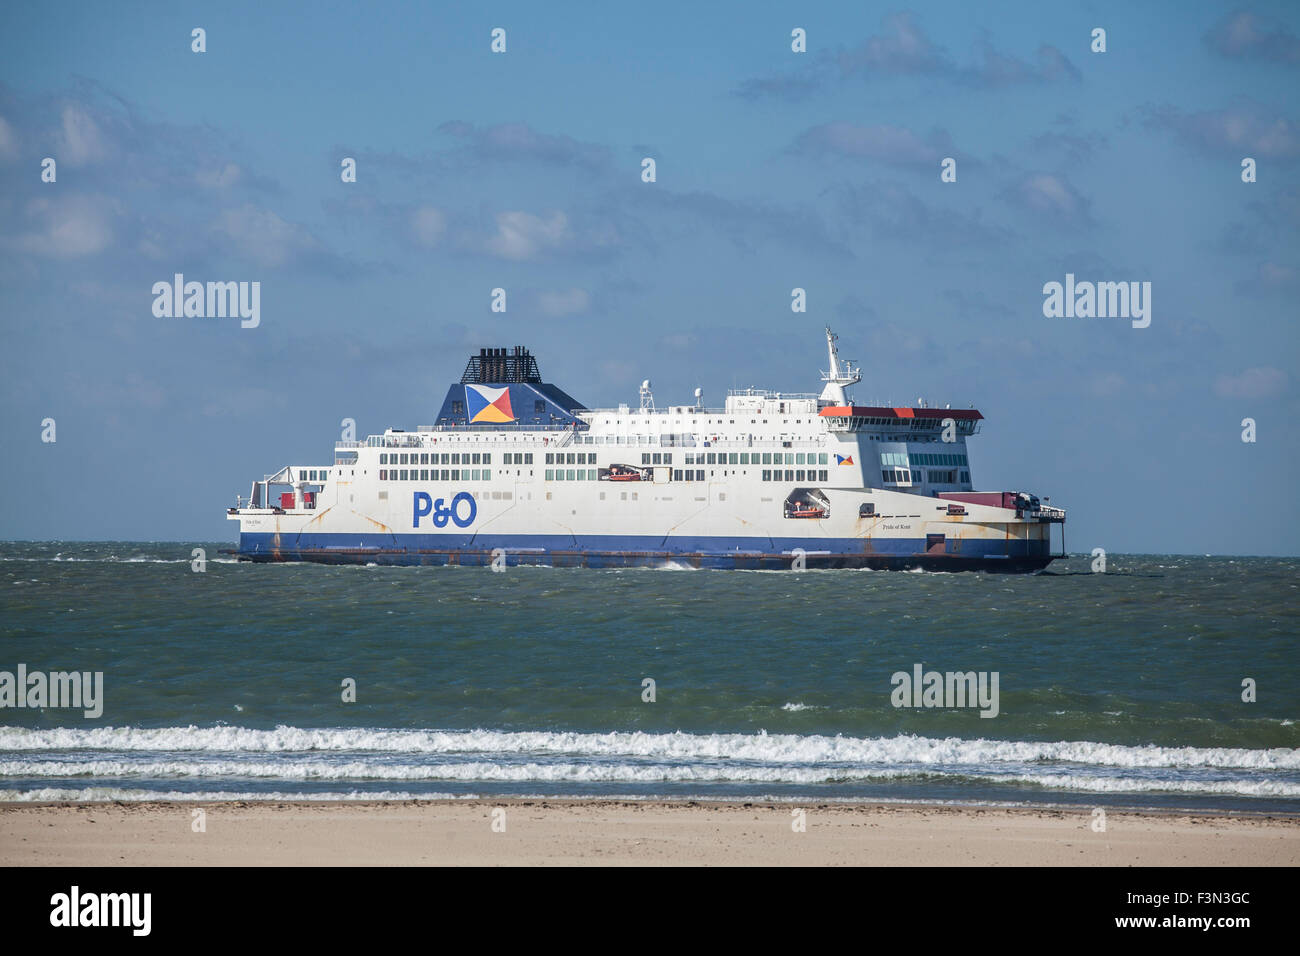 P&O Cross Channel Ferry Foto Stock